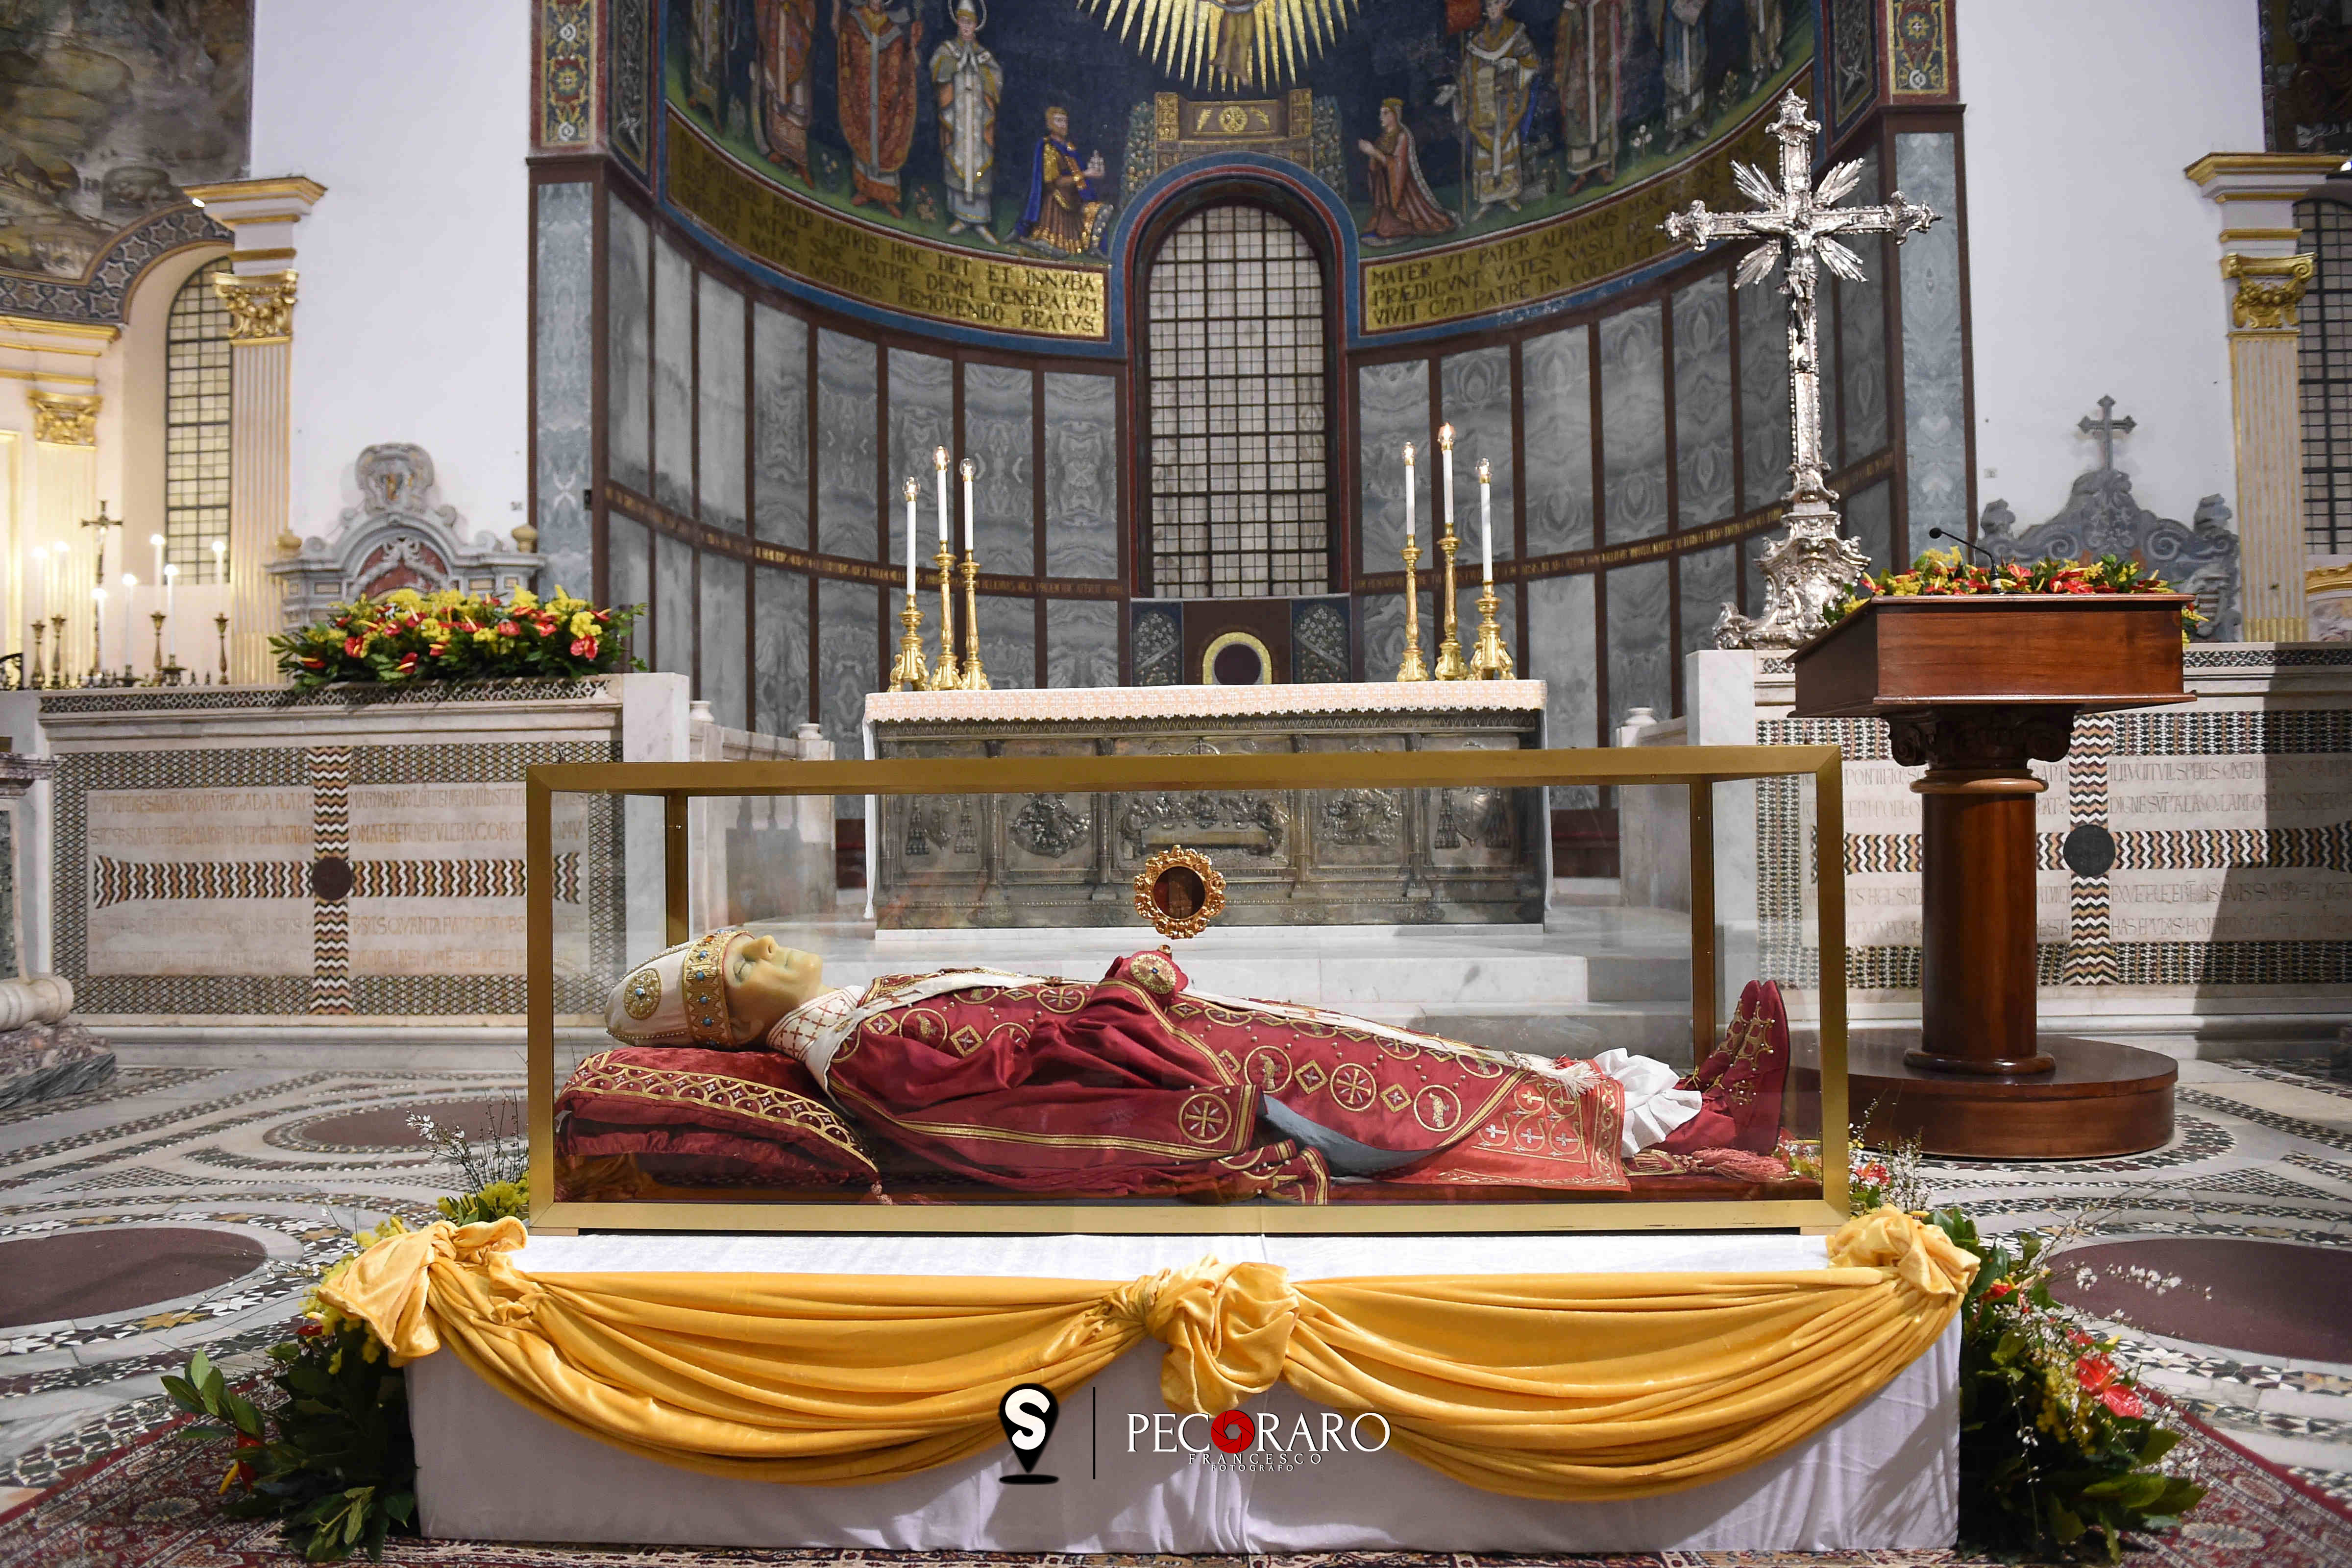 Rientro delle spoglie mortali di San Gregorio VII